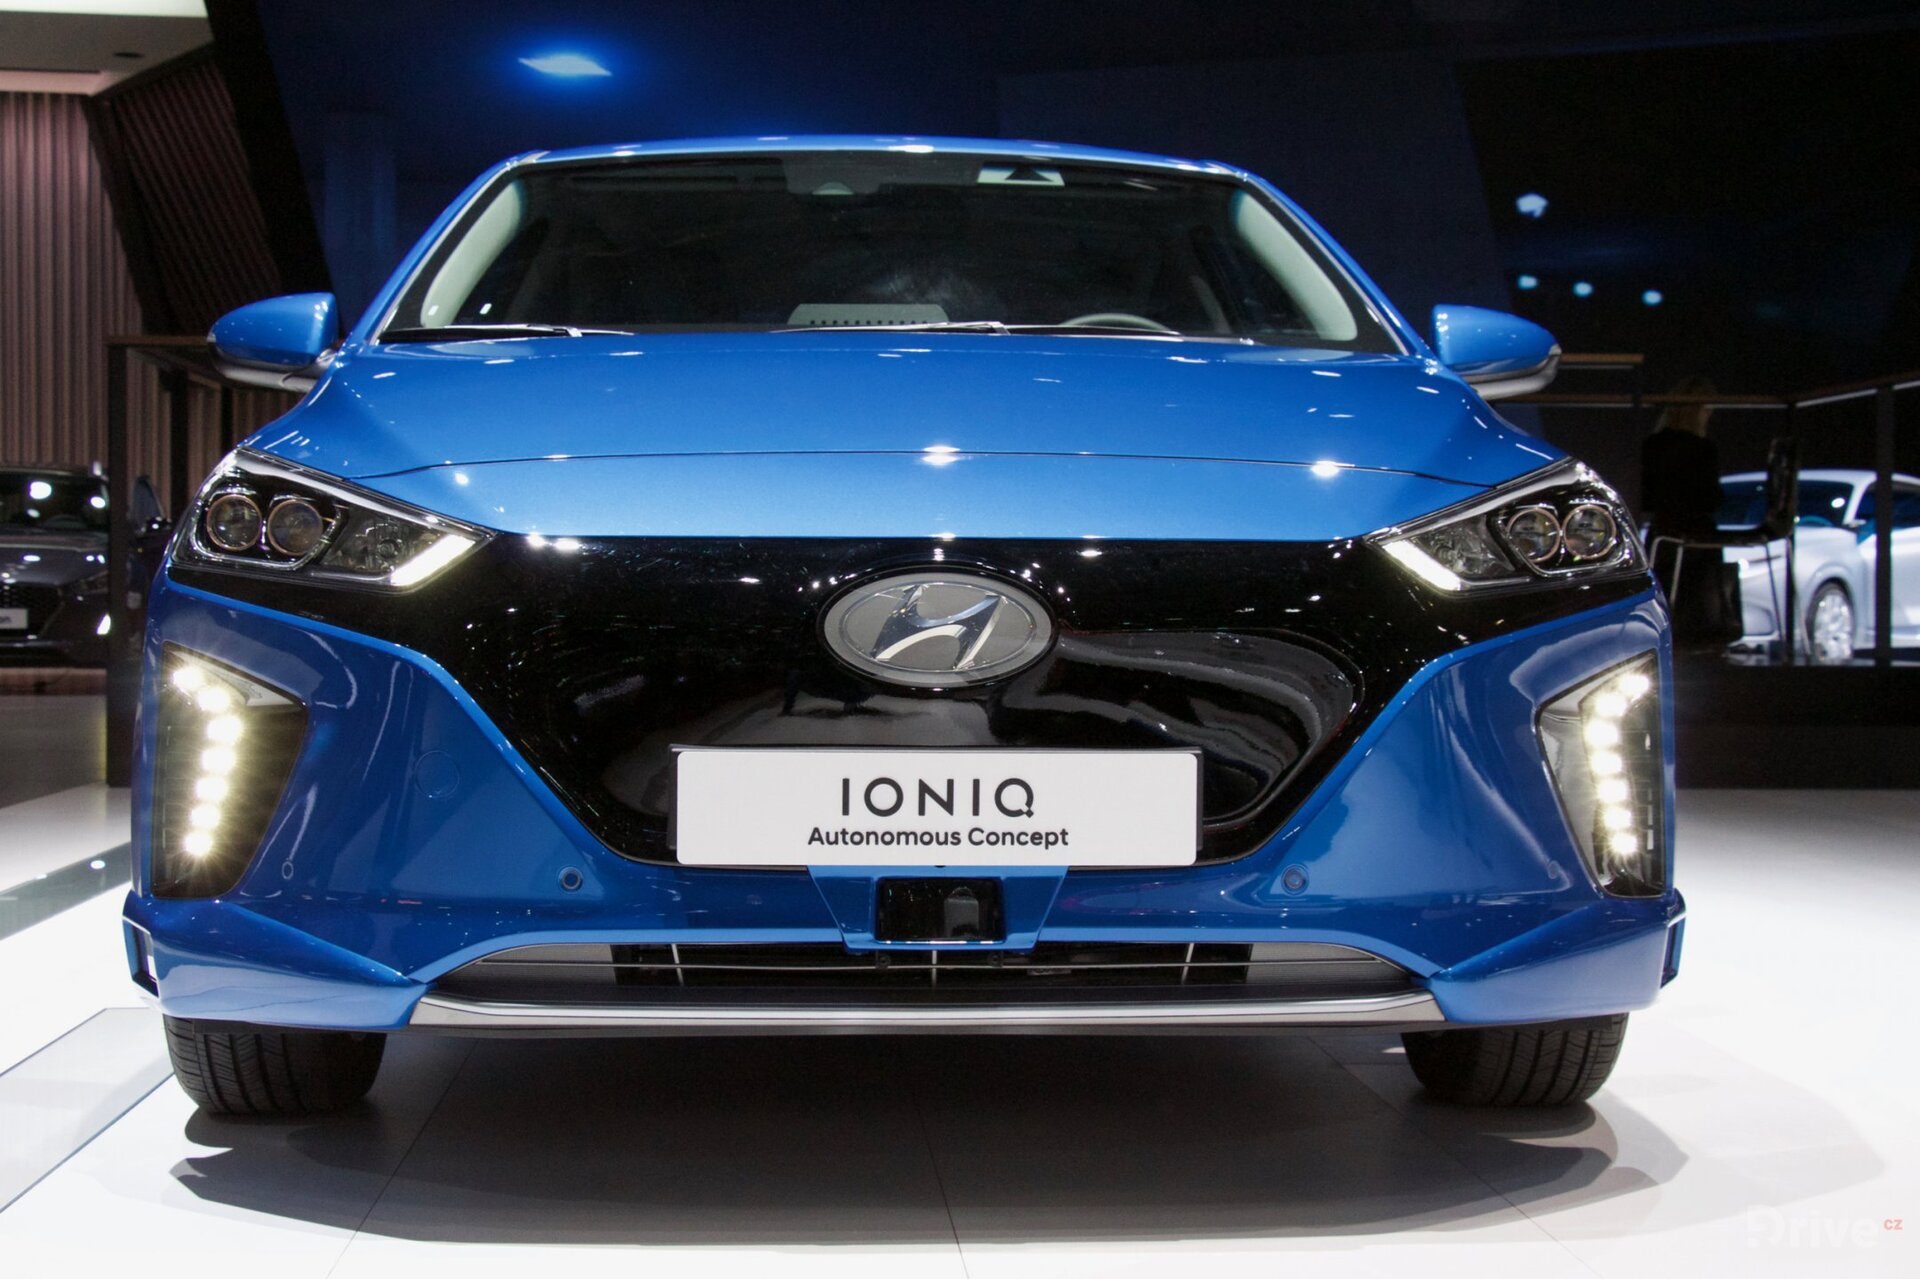 Autonomní Hyundai Ioniq